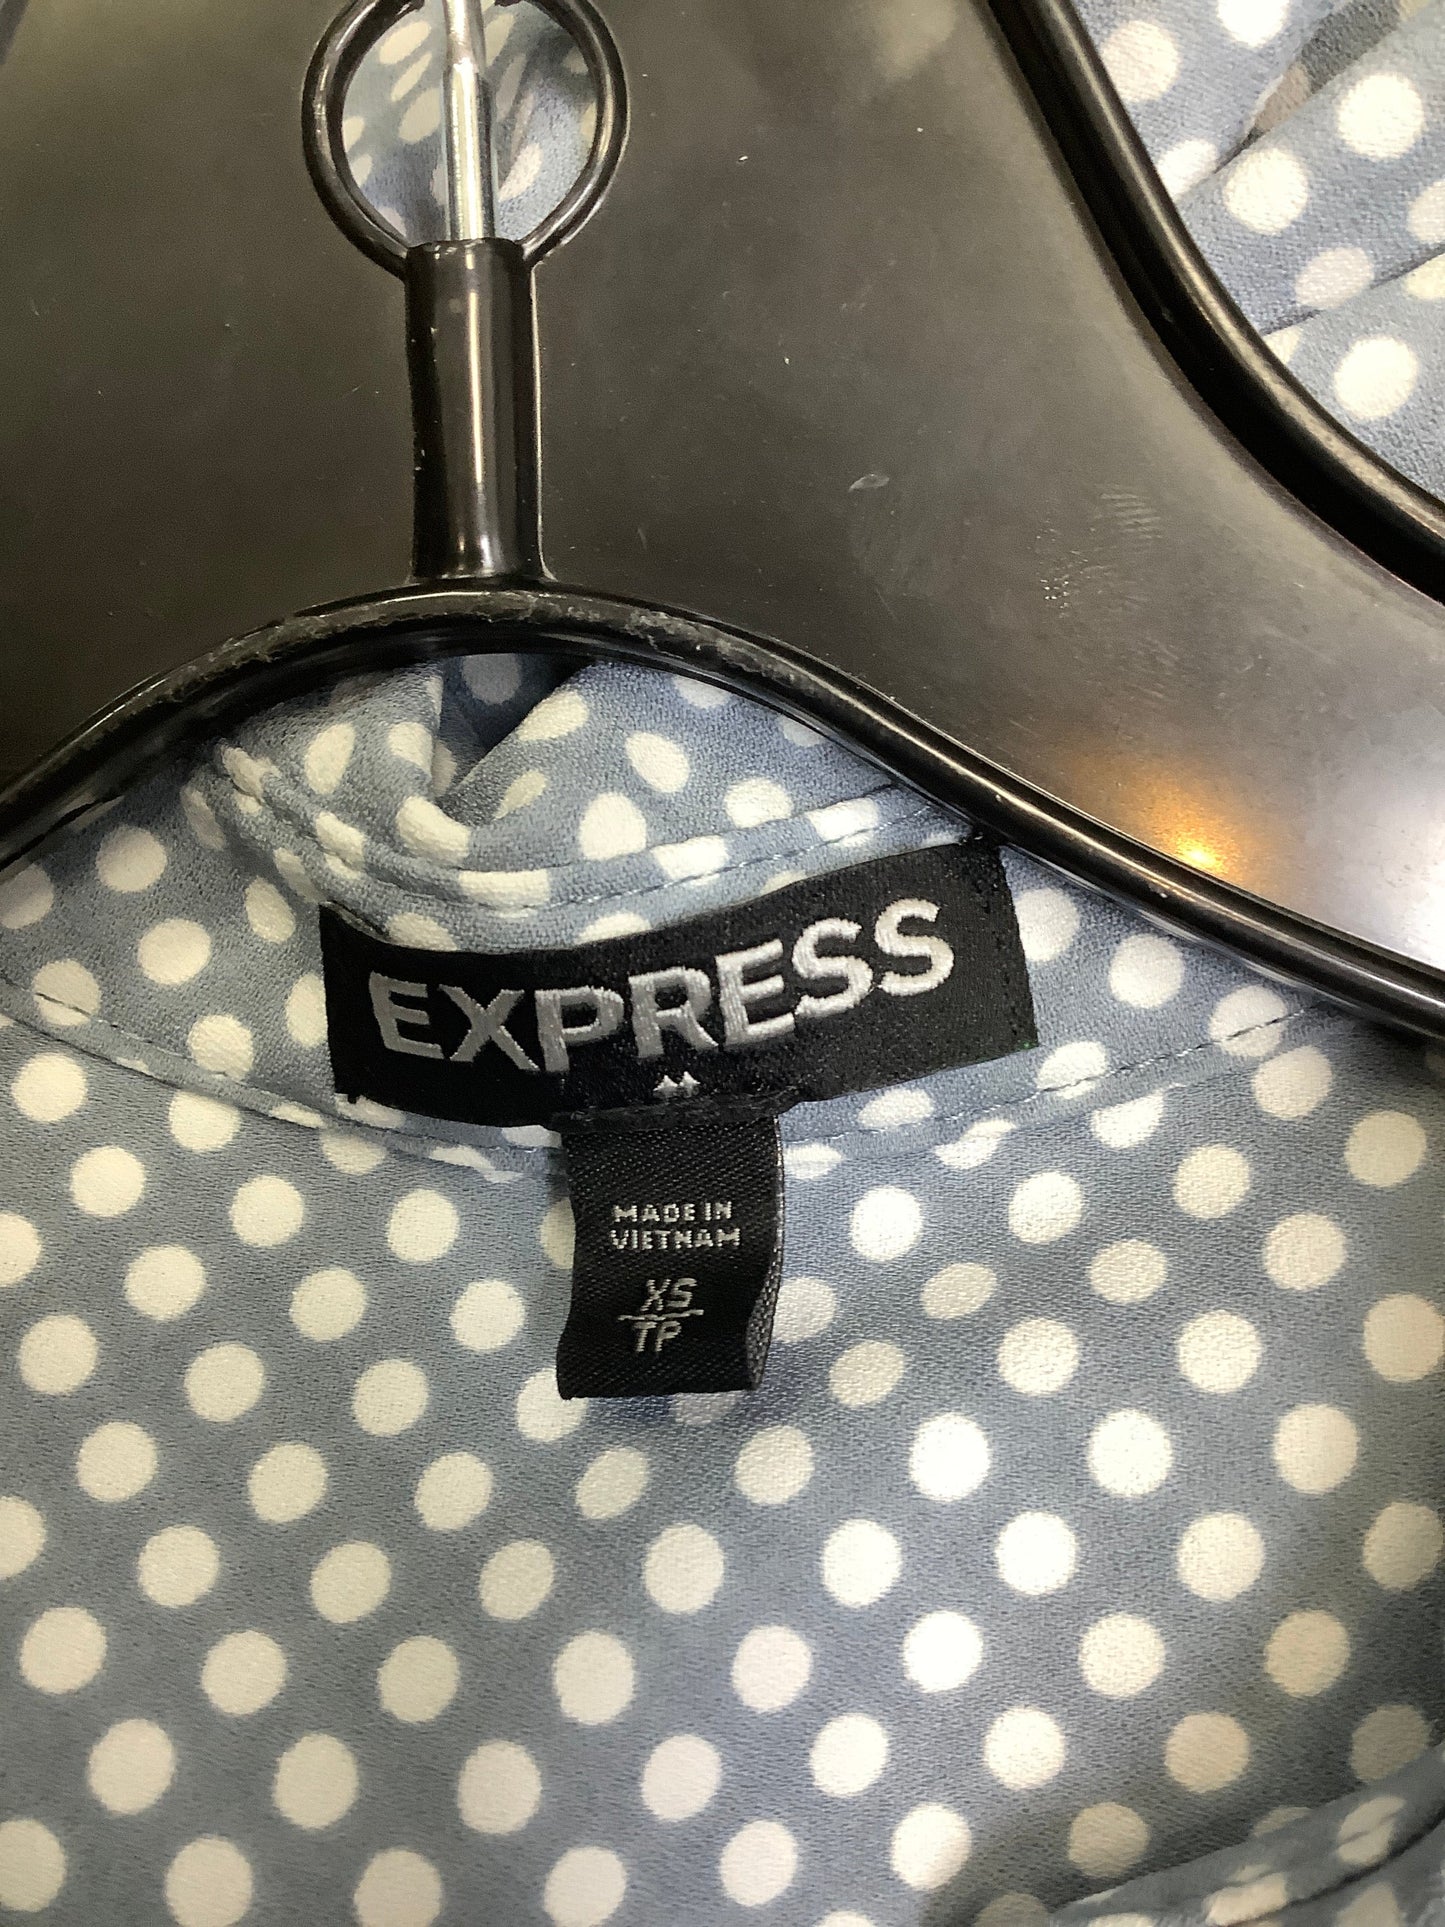 Polkadot Pattern Dress Casual Short Express, Size Xs